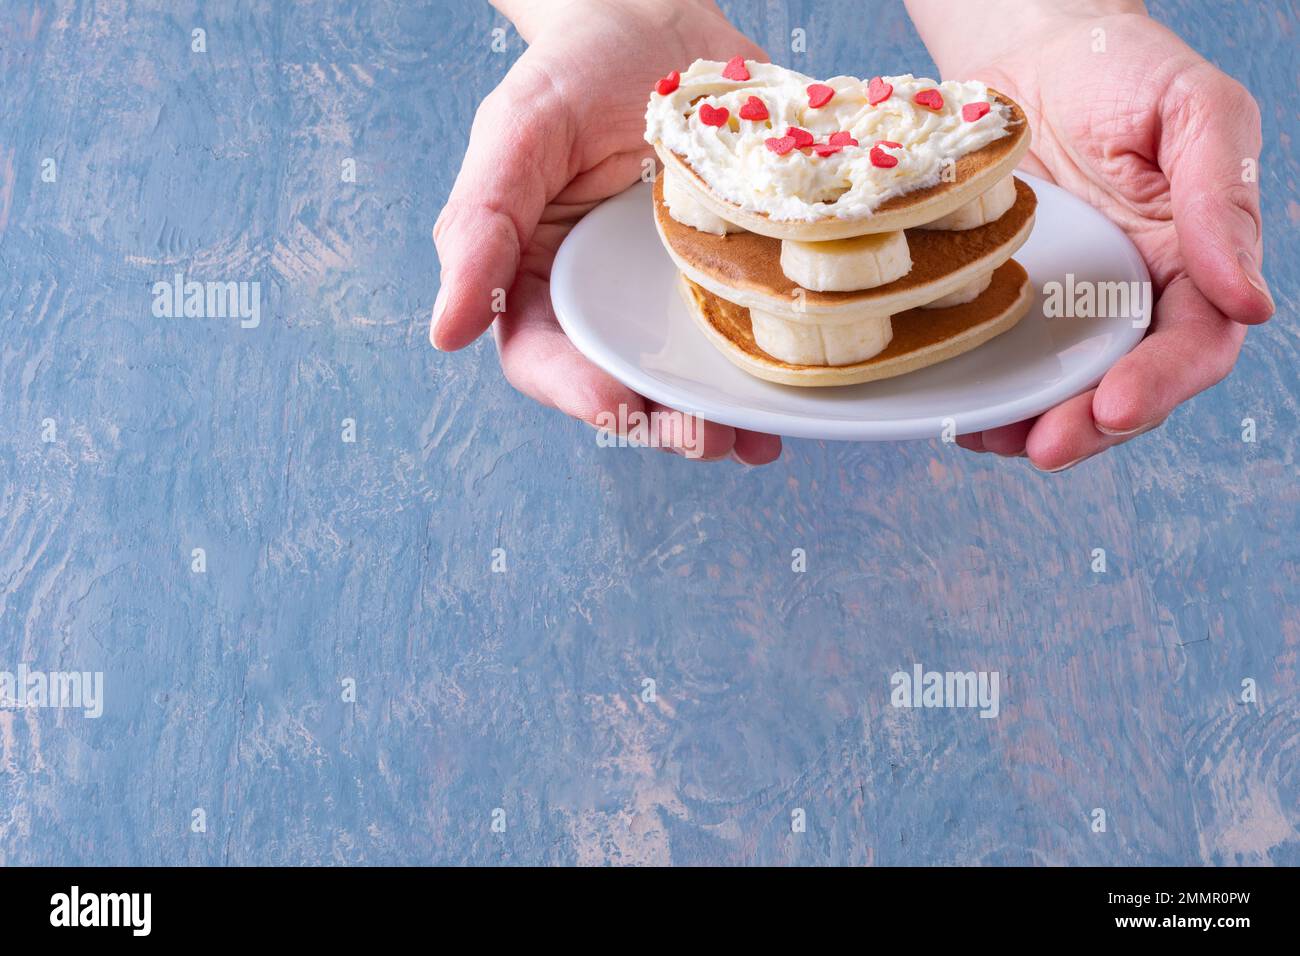 Kreatives Frühstück im Bett. Weibliche Hand hält einen weißen Teller mit einem Stapel hausgemachter herzförmiger Pfannkuchen, dekoriert mit weißer Creme und roten Herzen Stockfoto